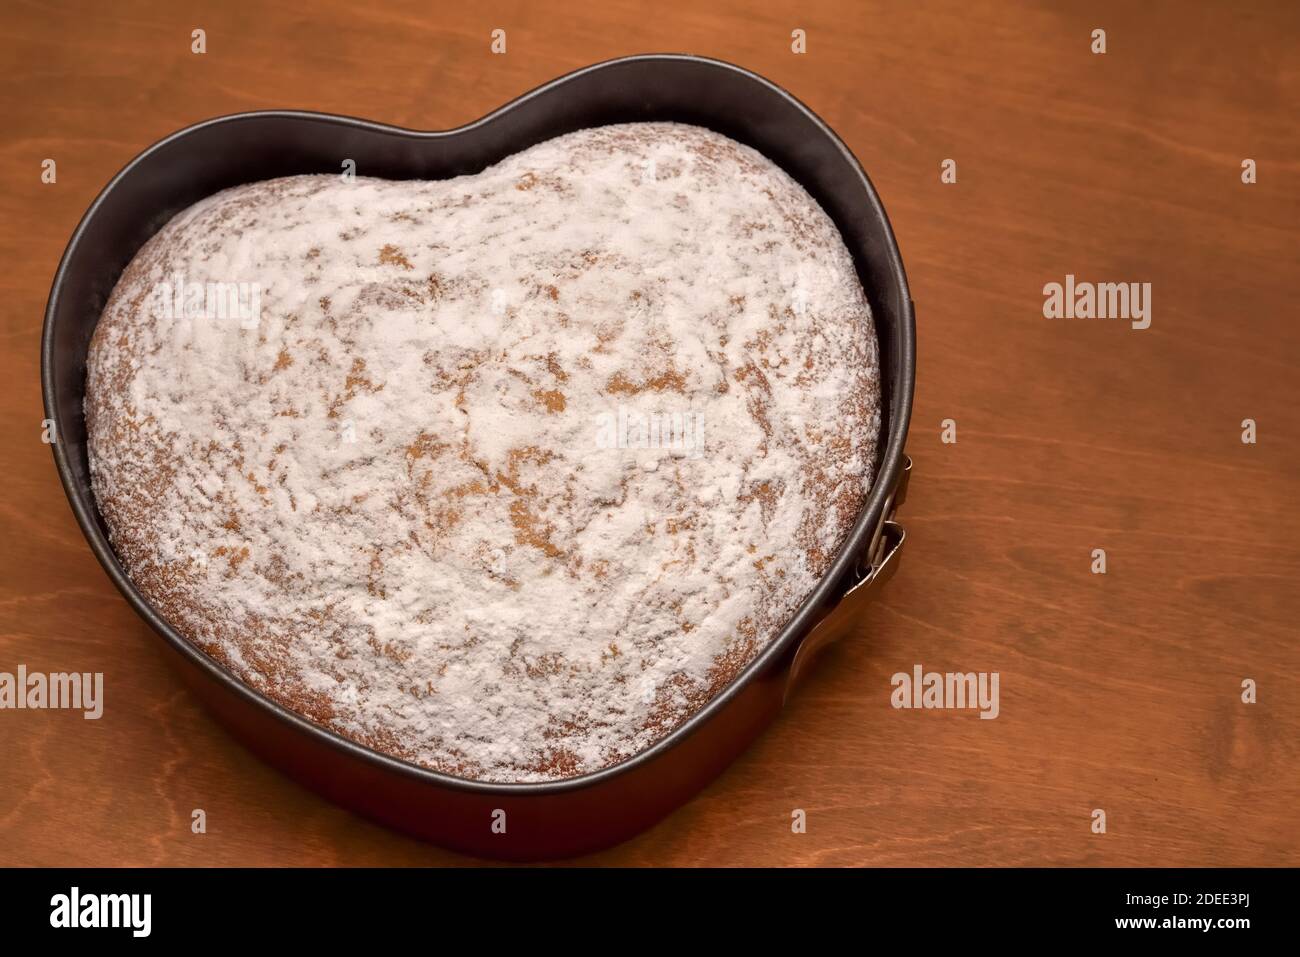 Gâteau fait maison en forme de coeur, fraîchement cuit et dépoussiéré avec du sucre en poudre Banque D'Images